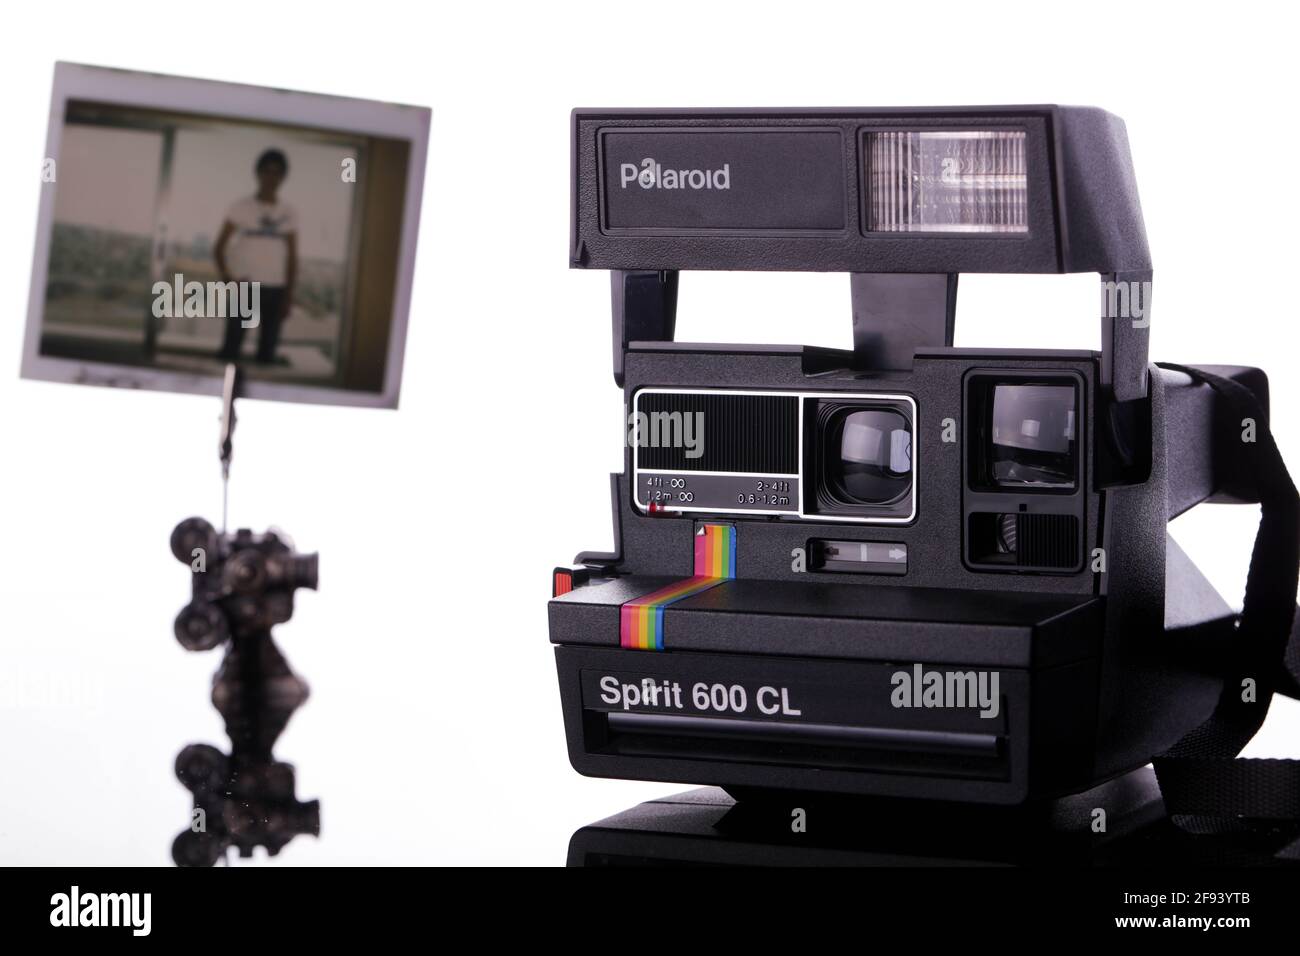 8. April 2021: Gaziantep, Türkei. Eine Polaroid SX-70 Kamera, die 1972  hergestellt wurde. Polaroid war das erste Unternehmen, das die  Sofortbildkamera entwickelte, die kurz nach der Aufnahme einen entwickelten  Druck erstellte. Andere,